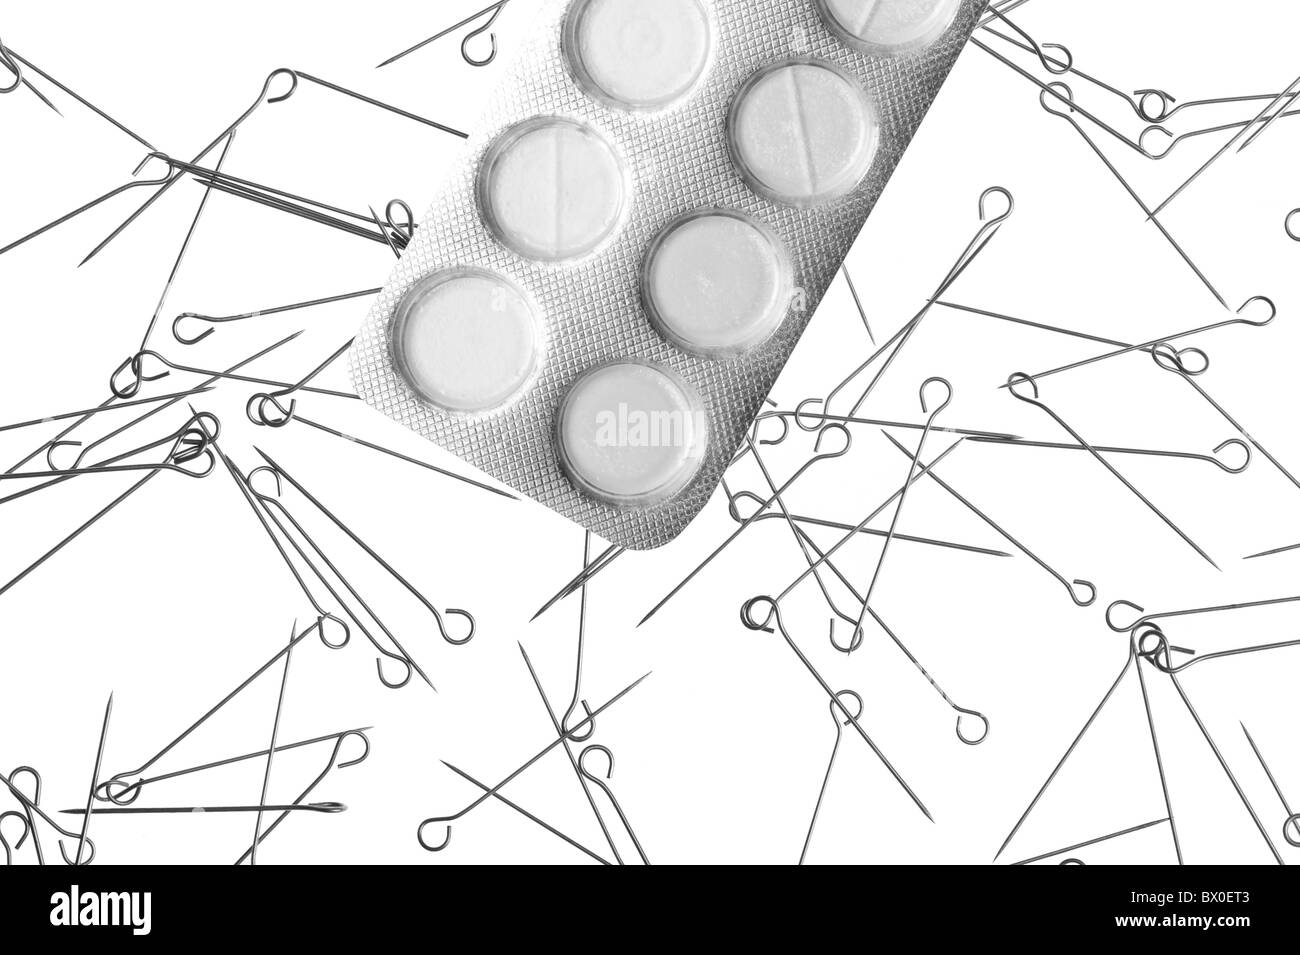 Drugs and needles on white background- metaphor of drug addiction Stock Photo